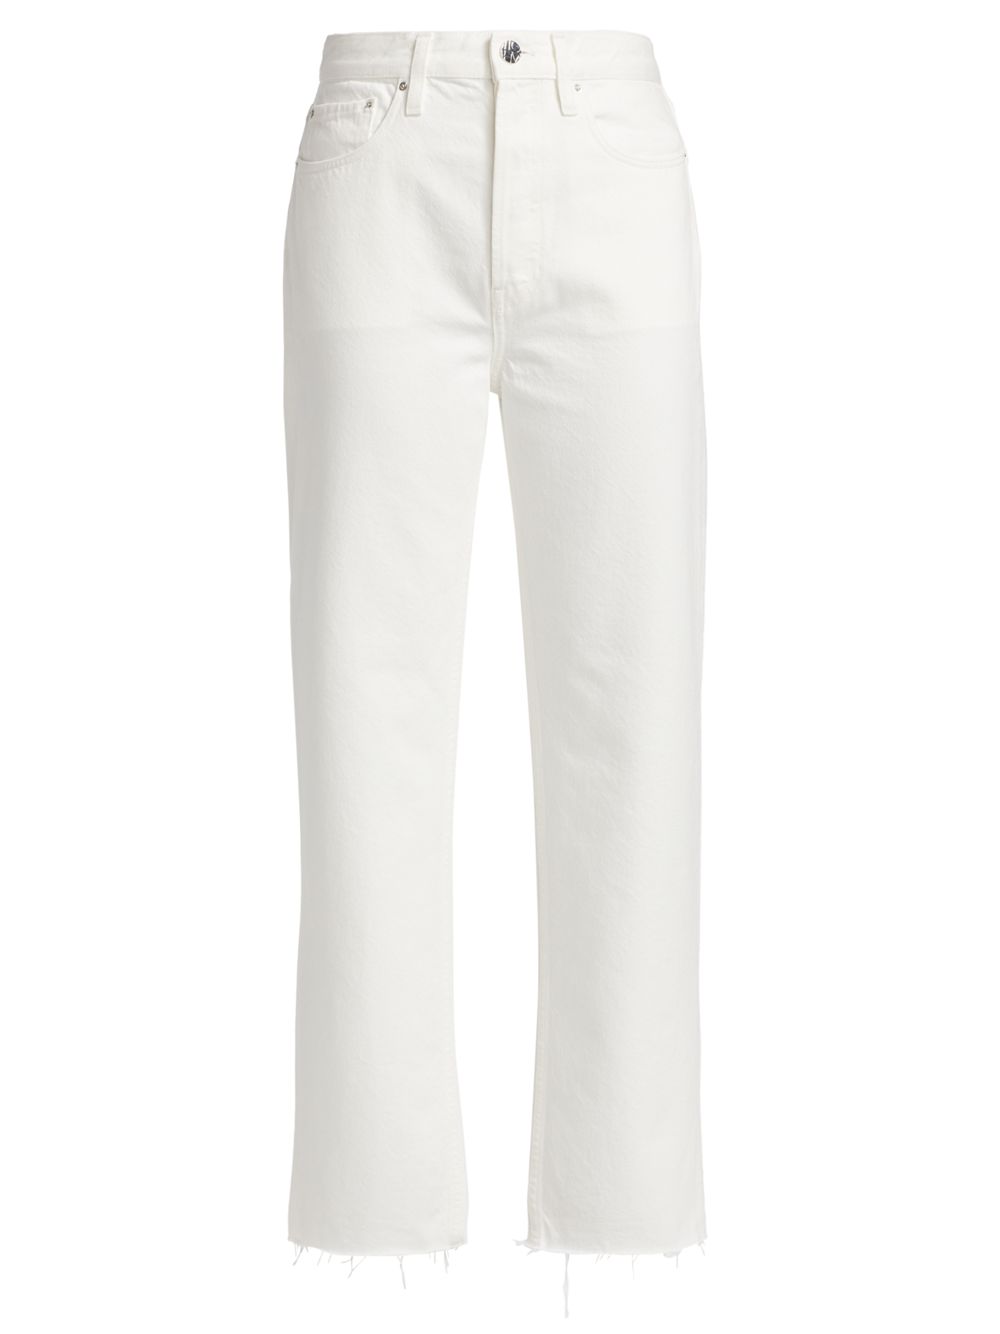 Классические зауженные джинсы прямого кроя со средней посадкой Totême, белый